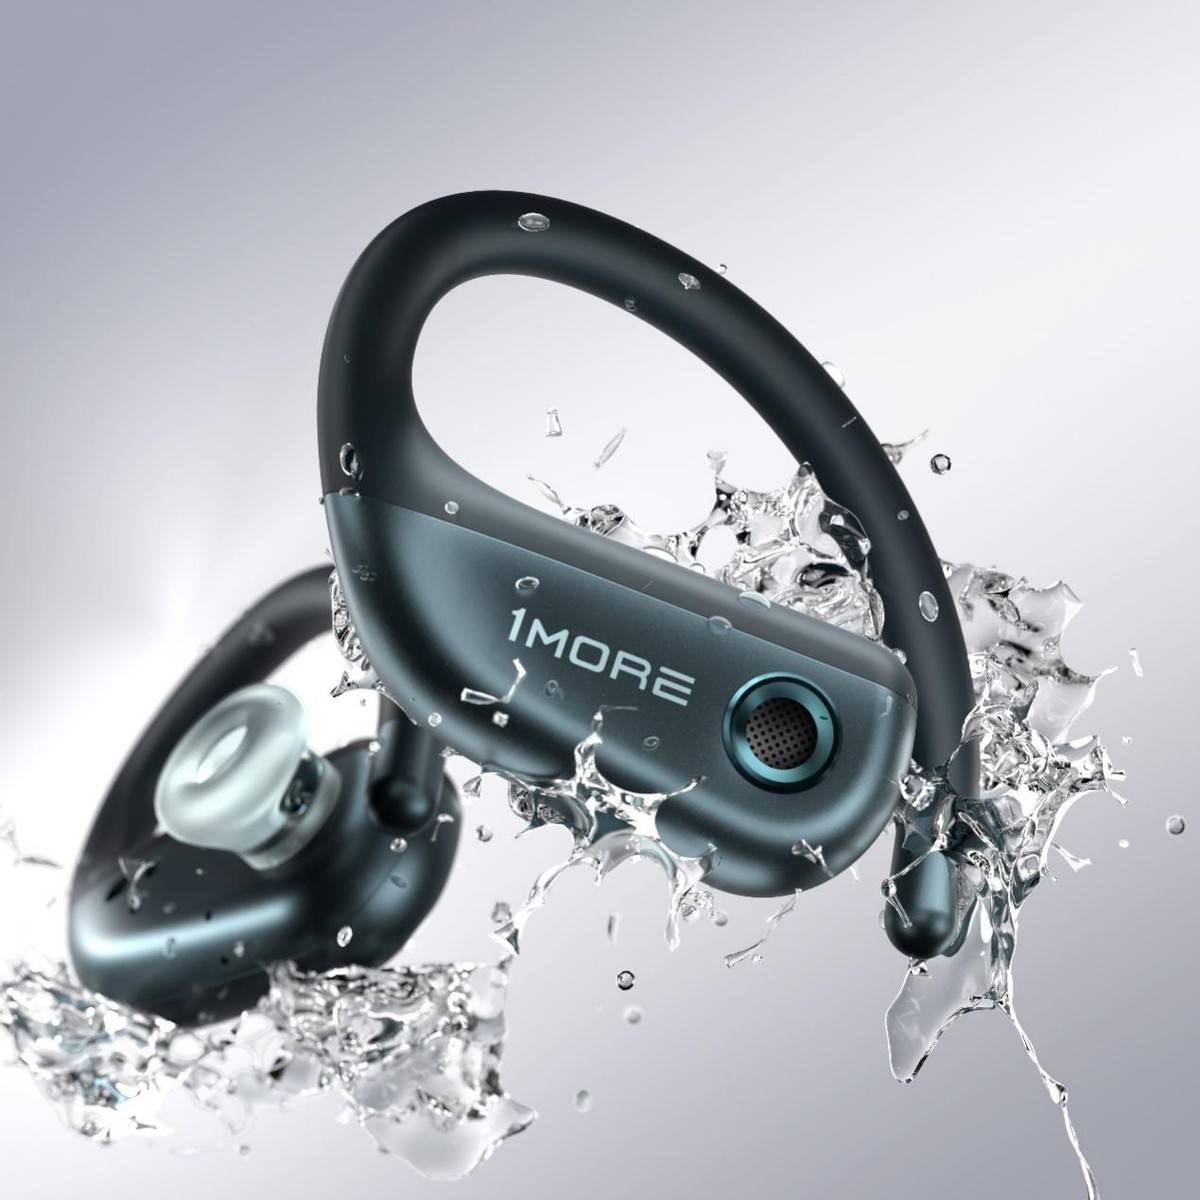 1MORE万魔开放式运动耳机新品S50正式发布 重新定义运动耳机